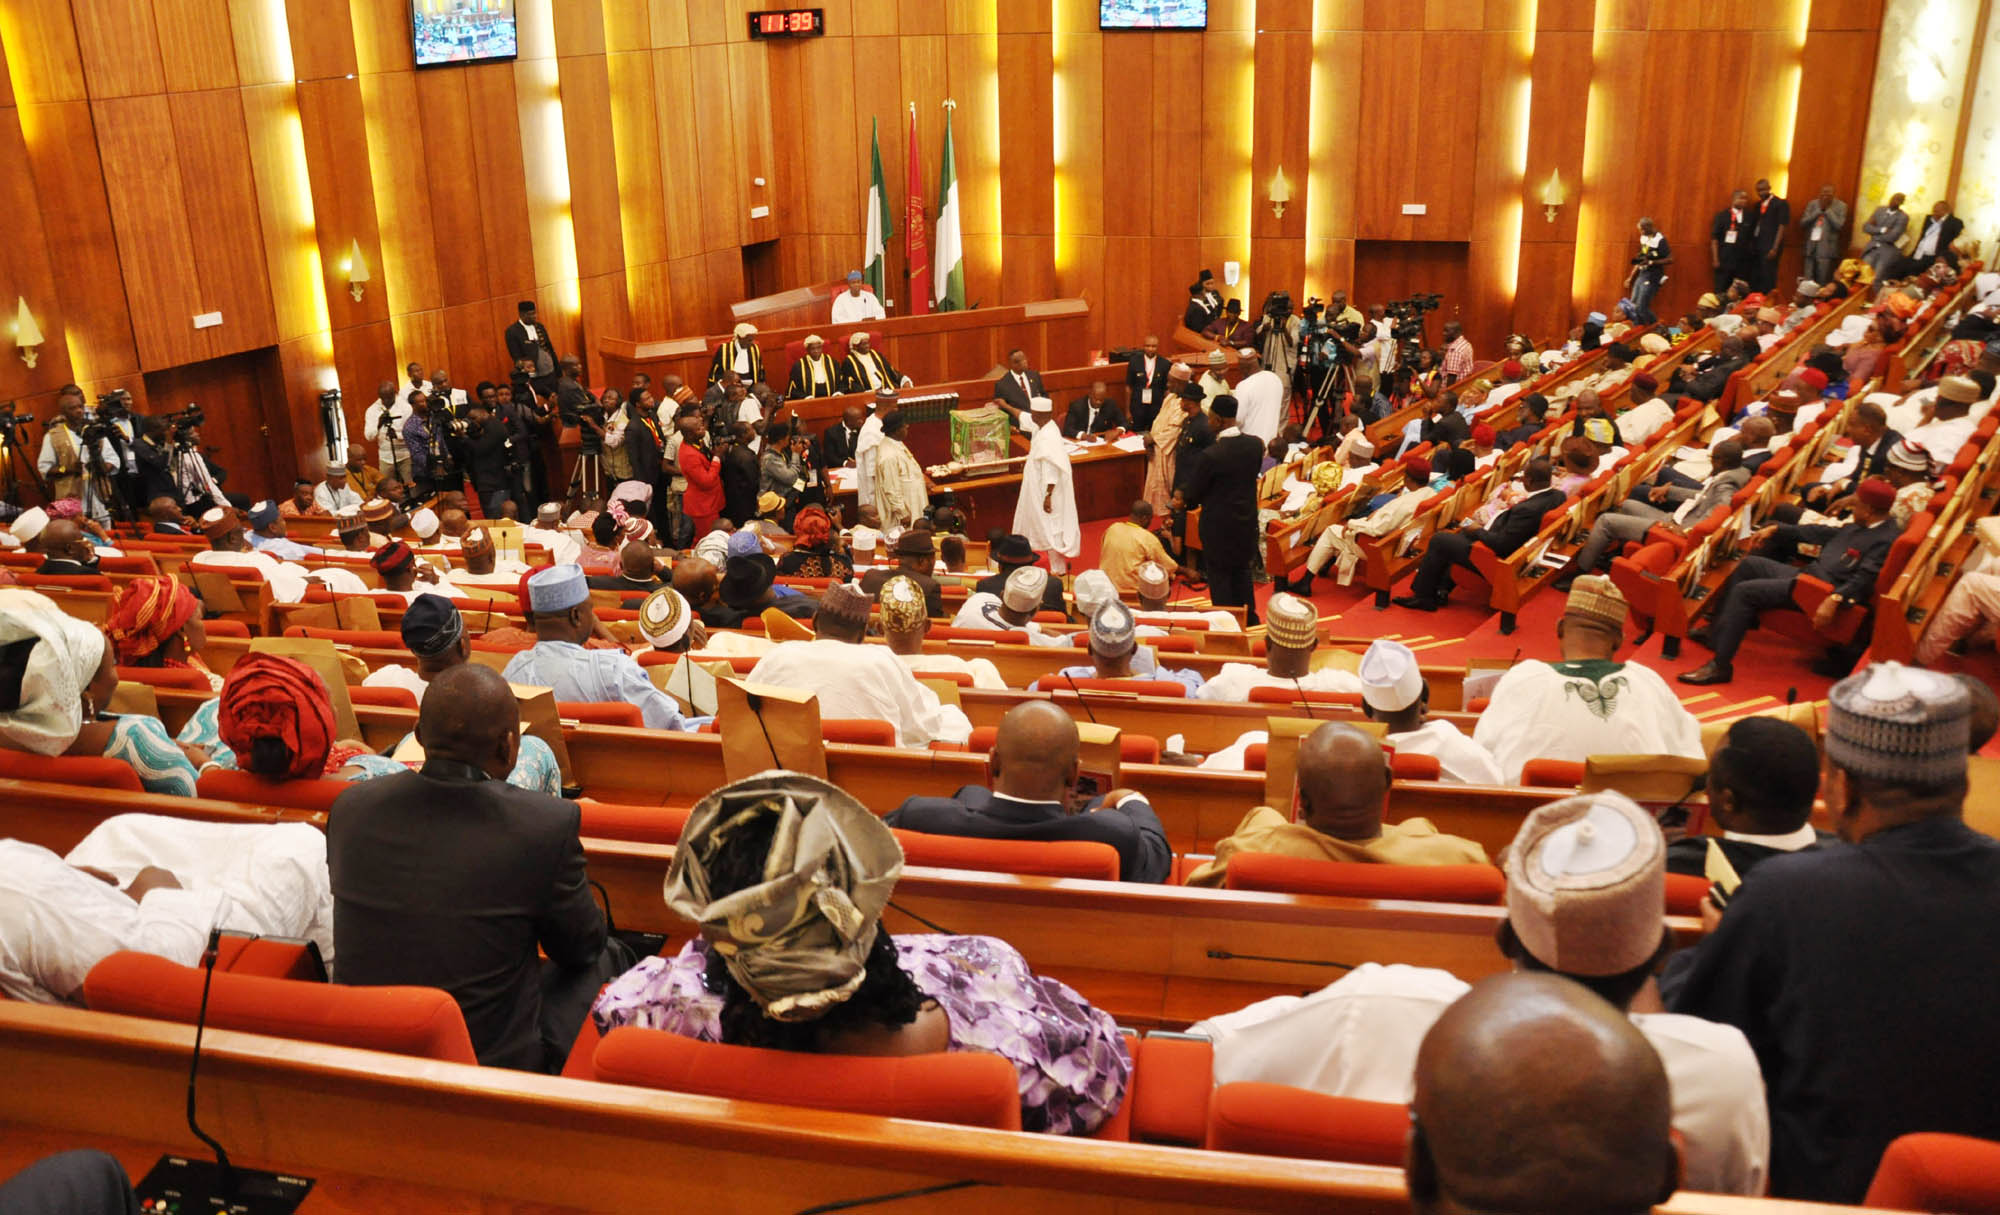 How Senate honoured dead Nigerian soldiers